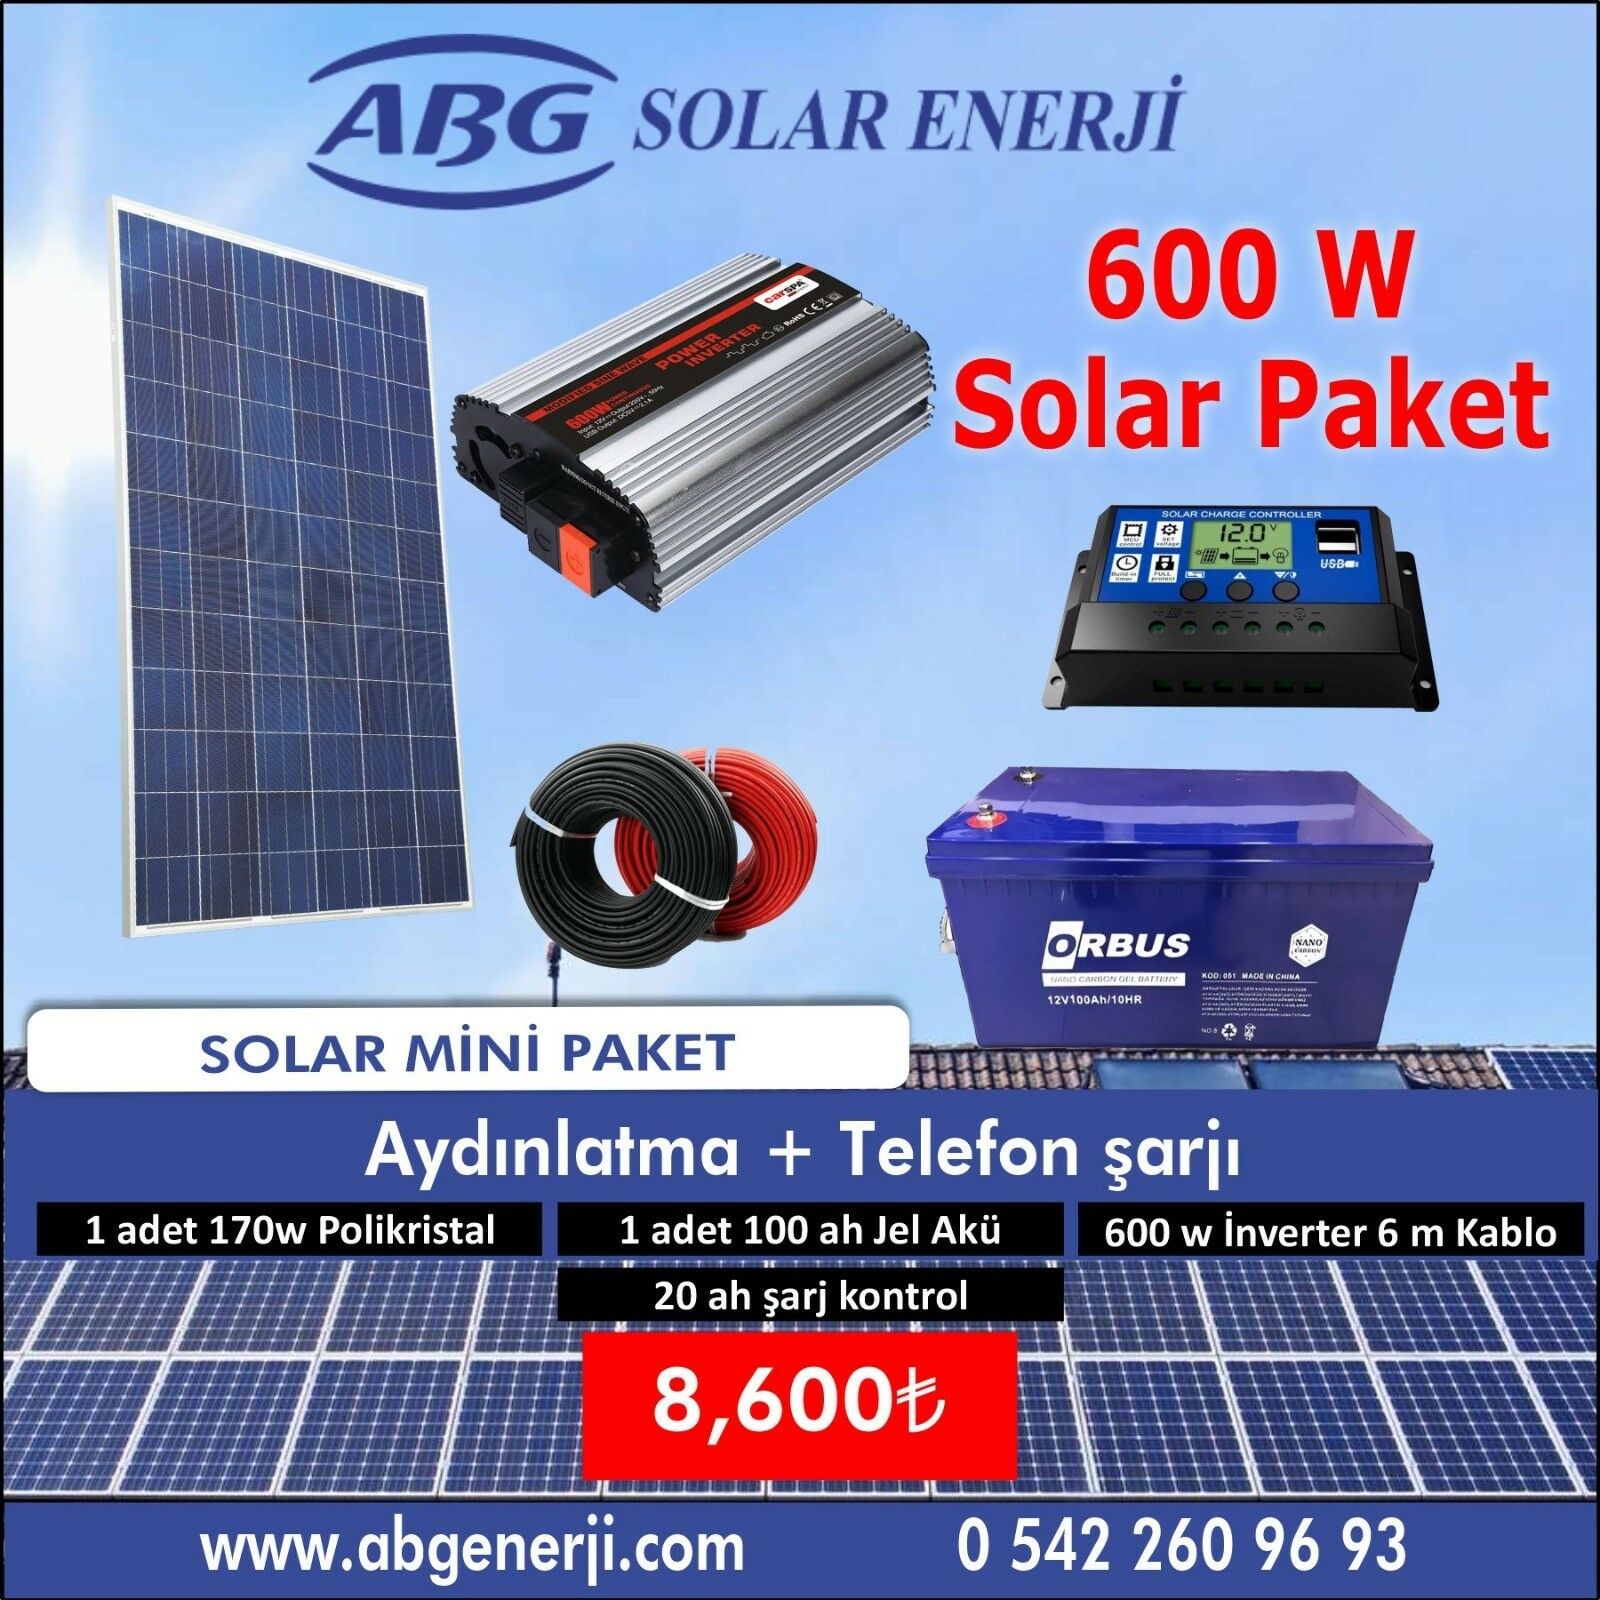 ABG 600W SOLAR PAKET